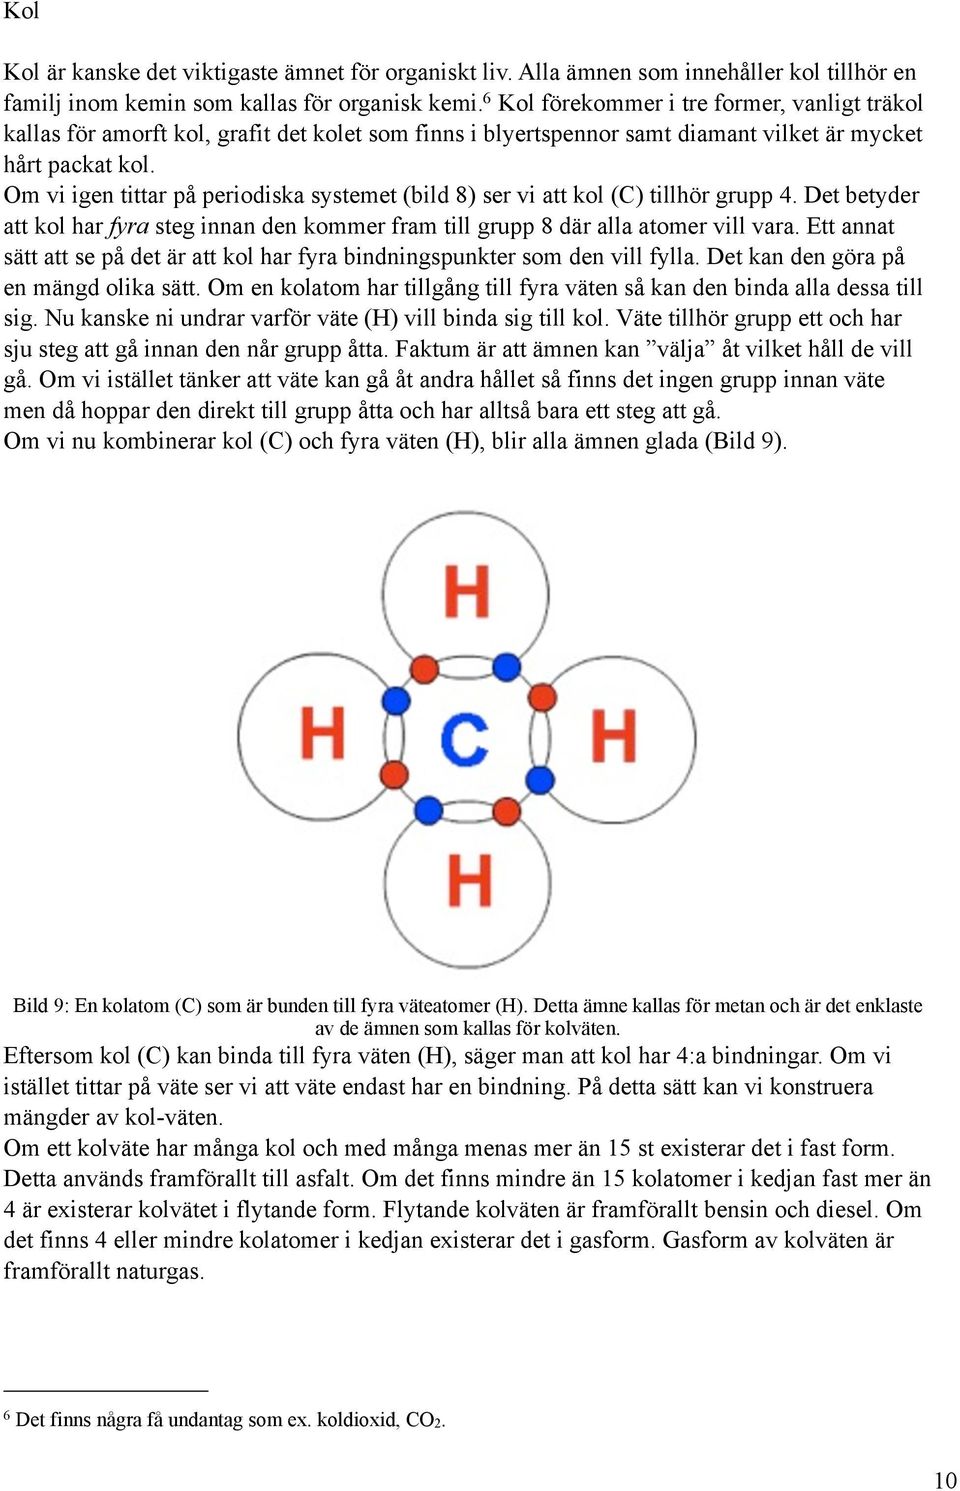 Om vi igen tittar på periodiska systemet (bild 8) ser vi att kol (C) tillhör grupp 4. Det betyder att kol har fyra steg innan den kommer fram till grupp 8 där alla atomer vill vara.